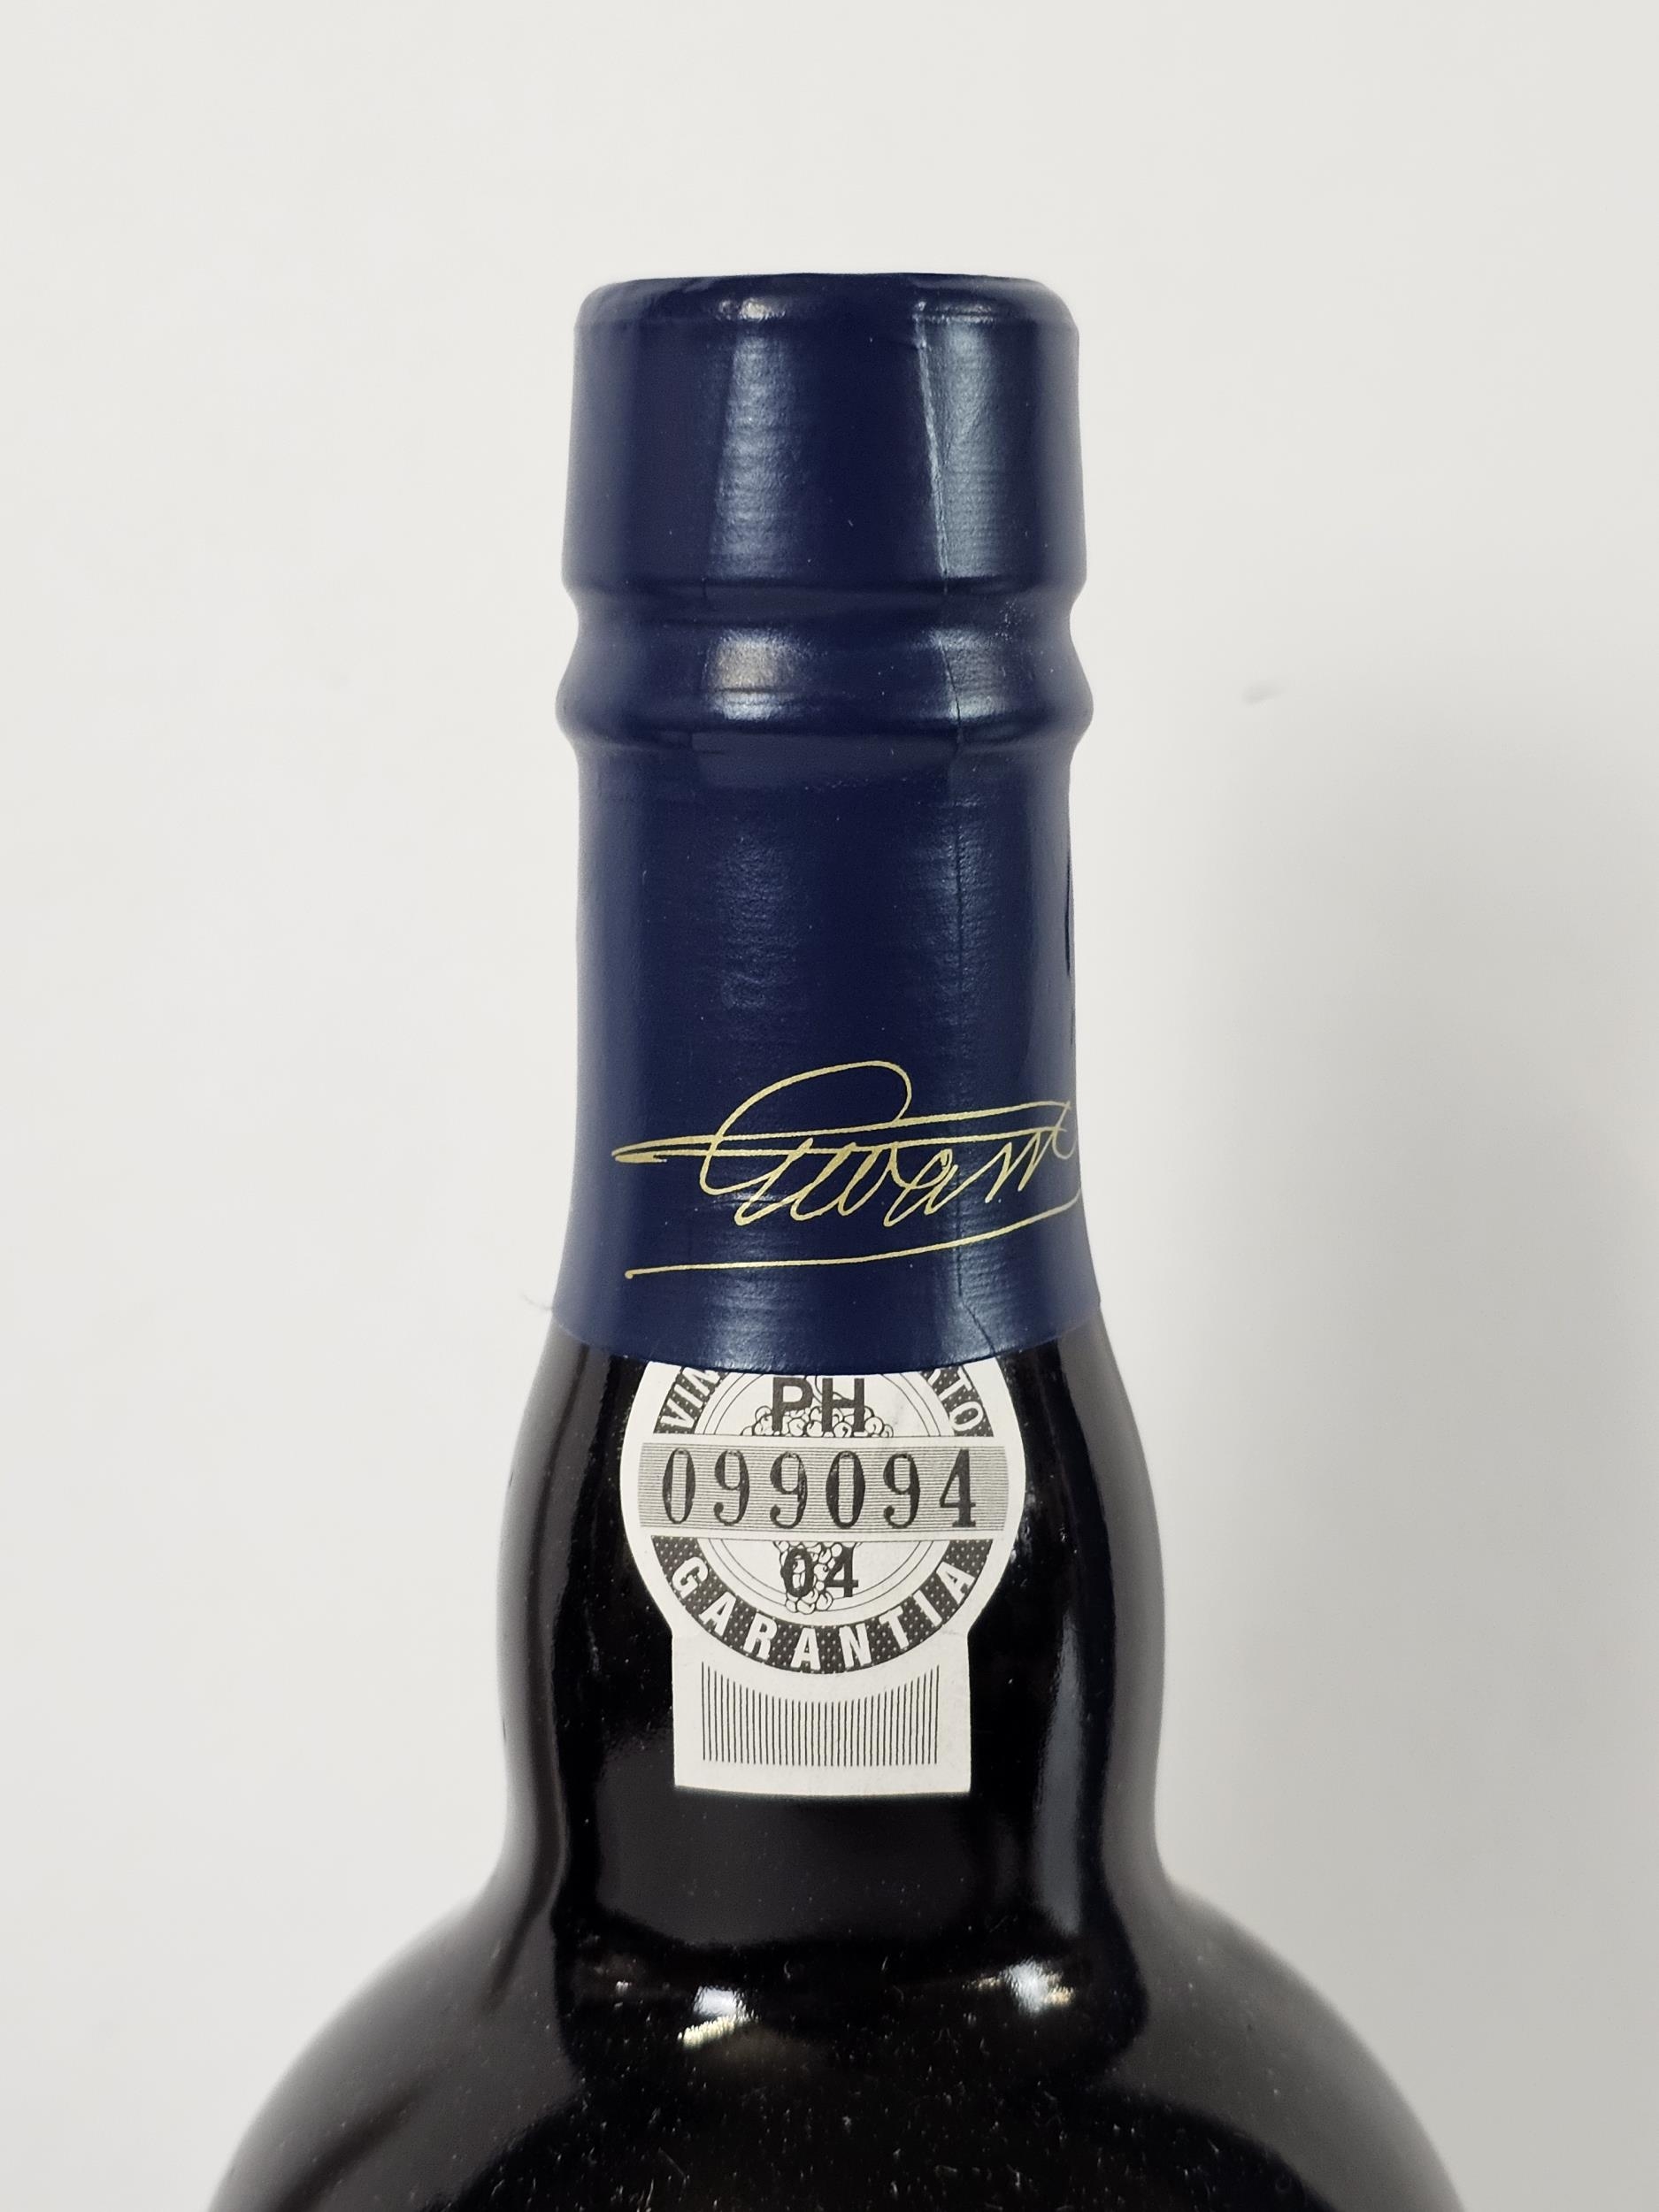 2001 Warre's Late Bottled Vintage Port, Portugal. 2 x 75cl bottles - Bild 2 aus 5